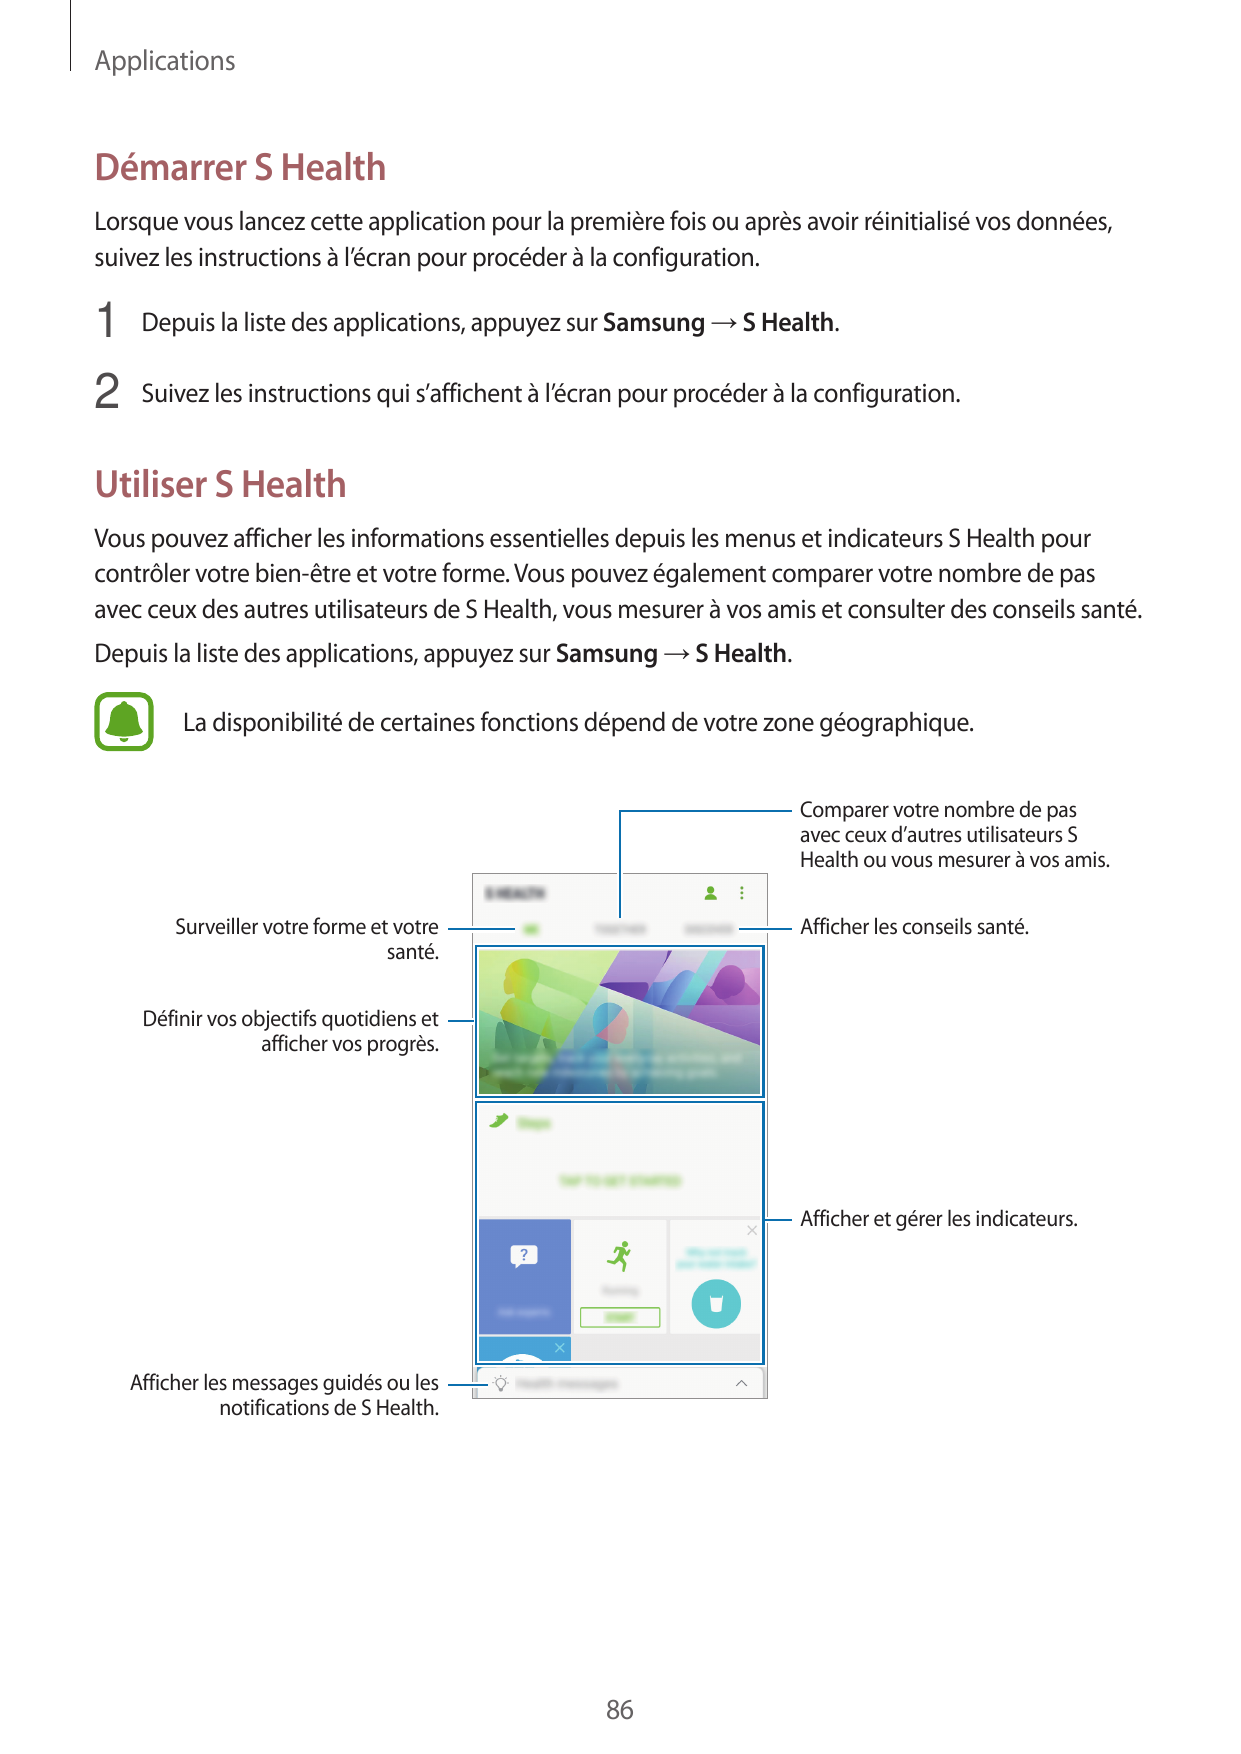 ApplicationsDémarrer S HealthLorsque vous lancez cette application pour la première fois ou après avoir réinitialisé vos données